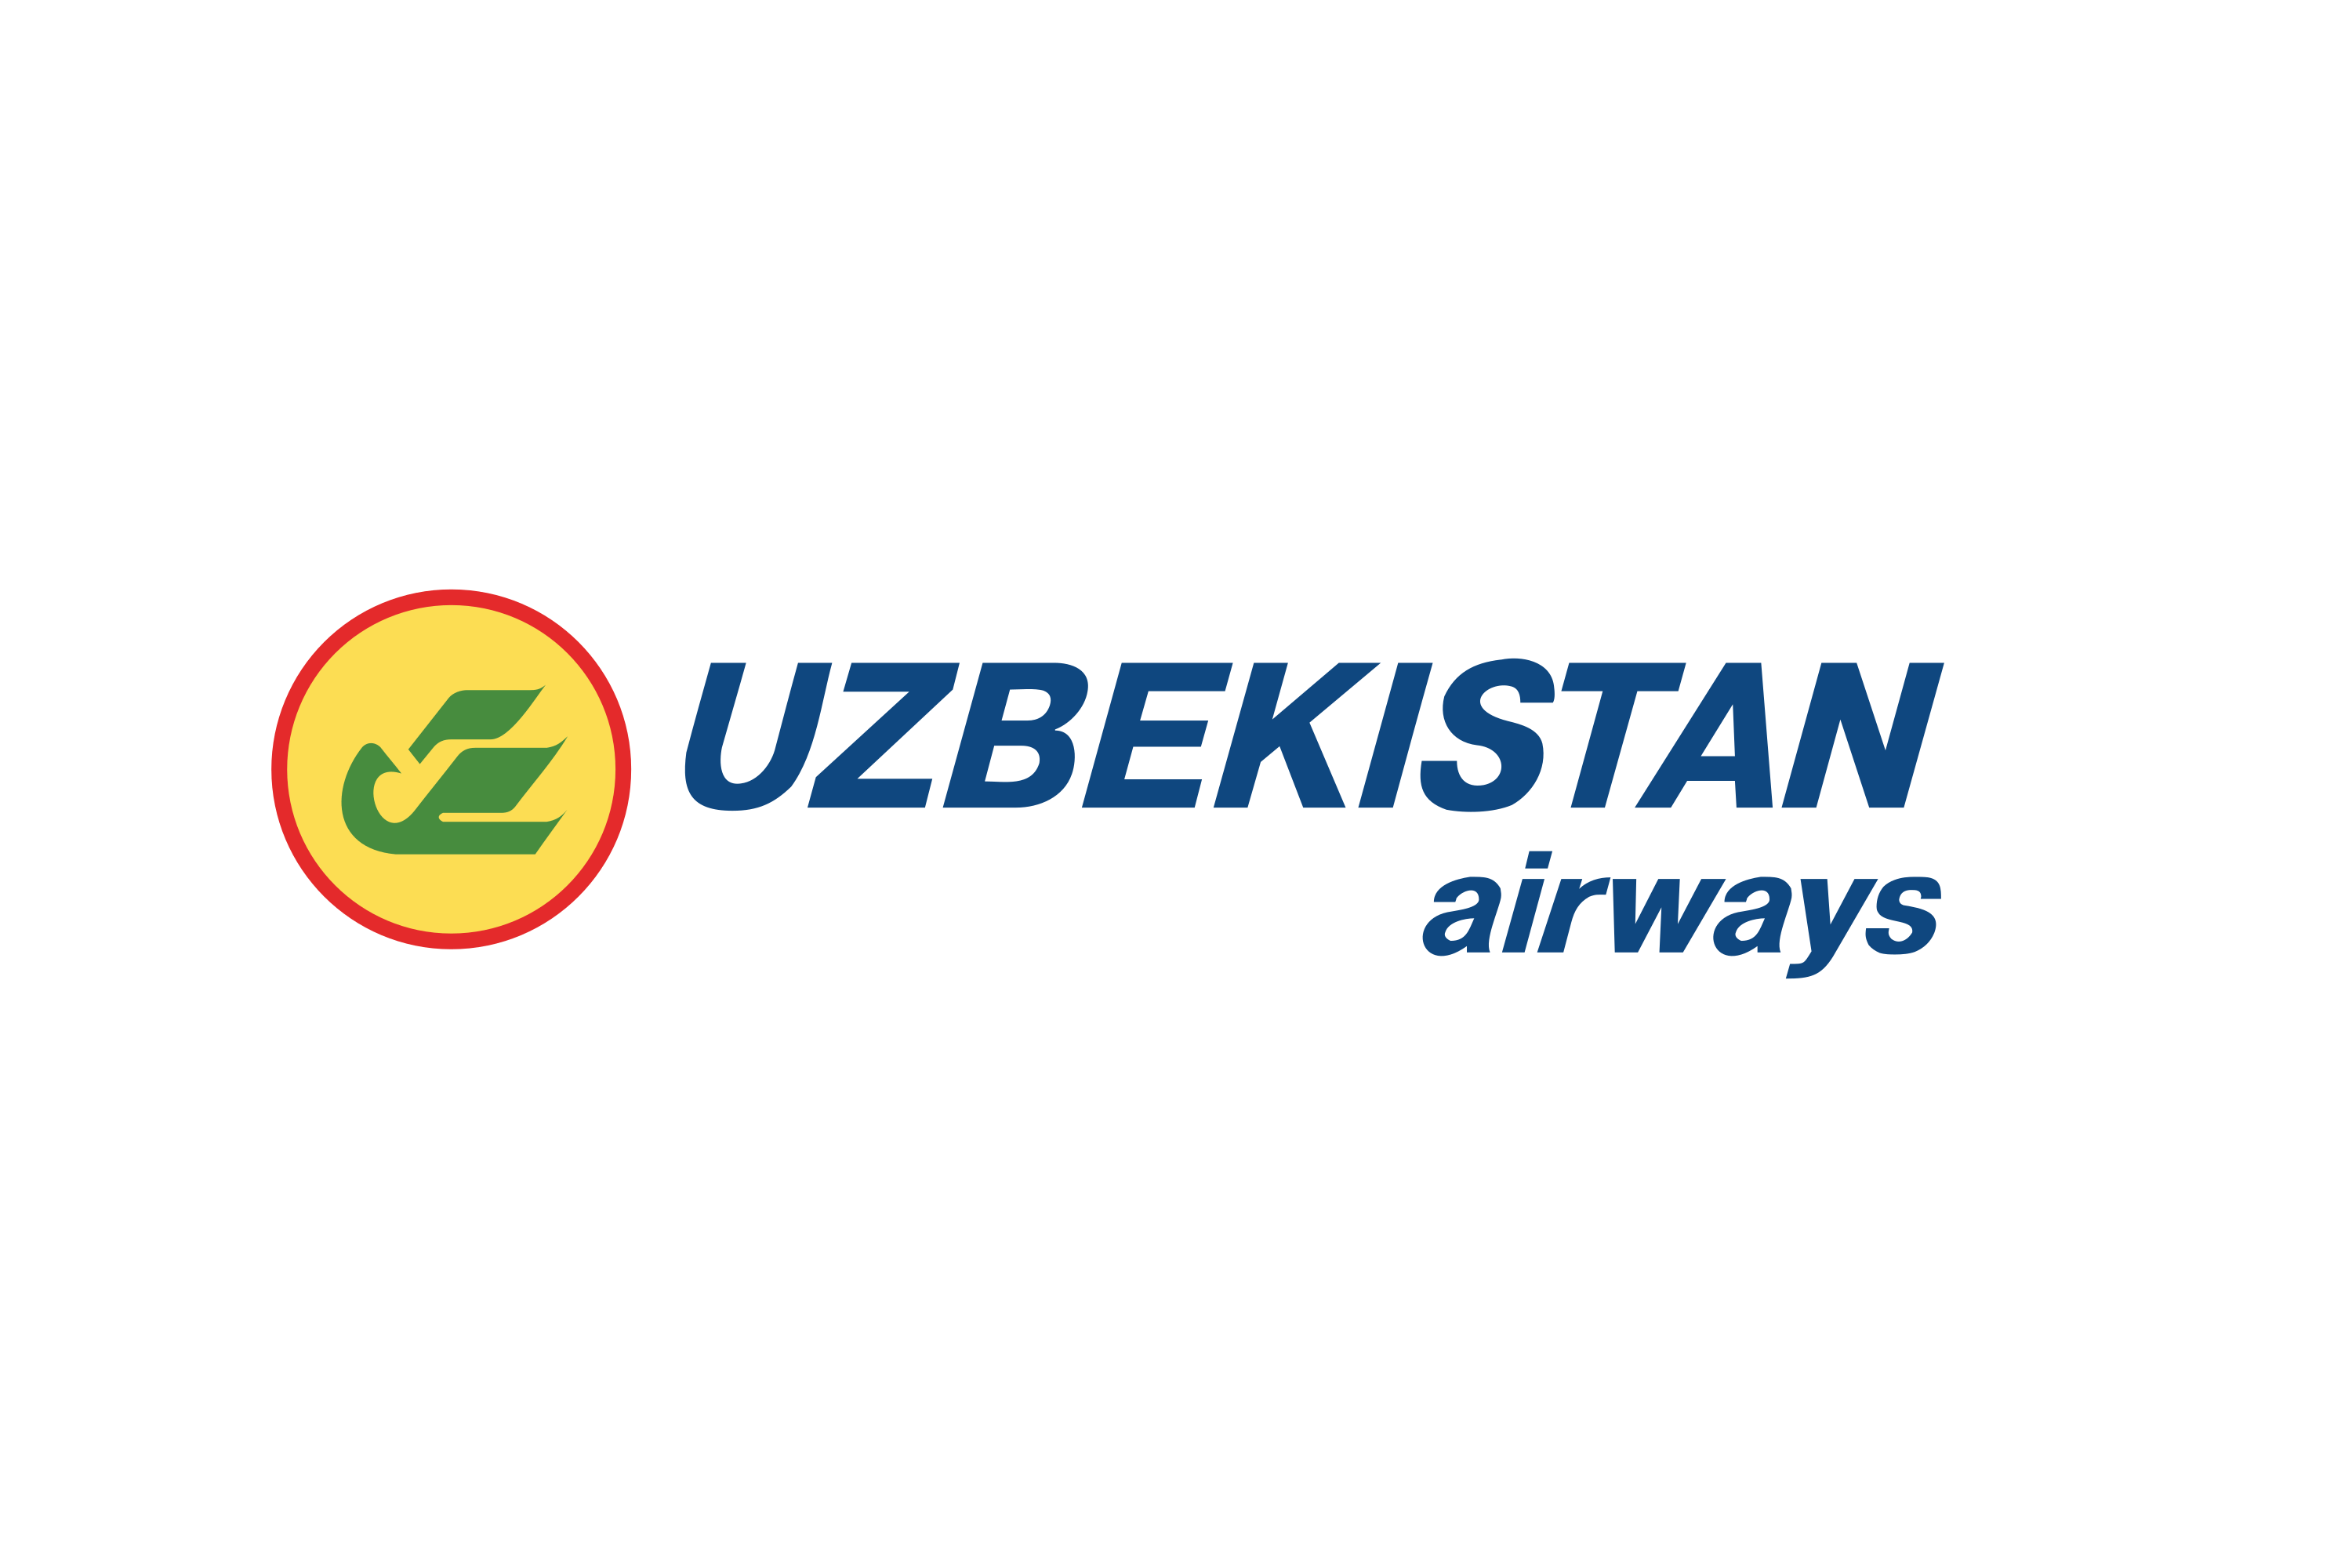 Uzbekistan Air